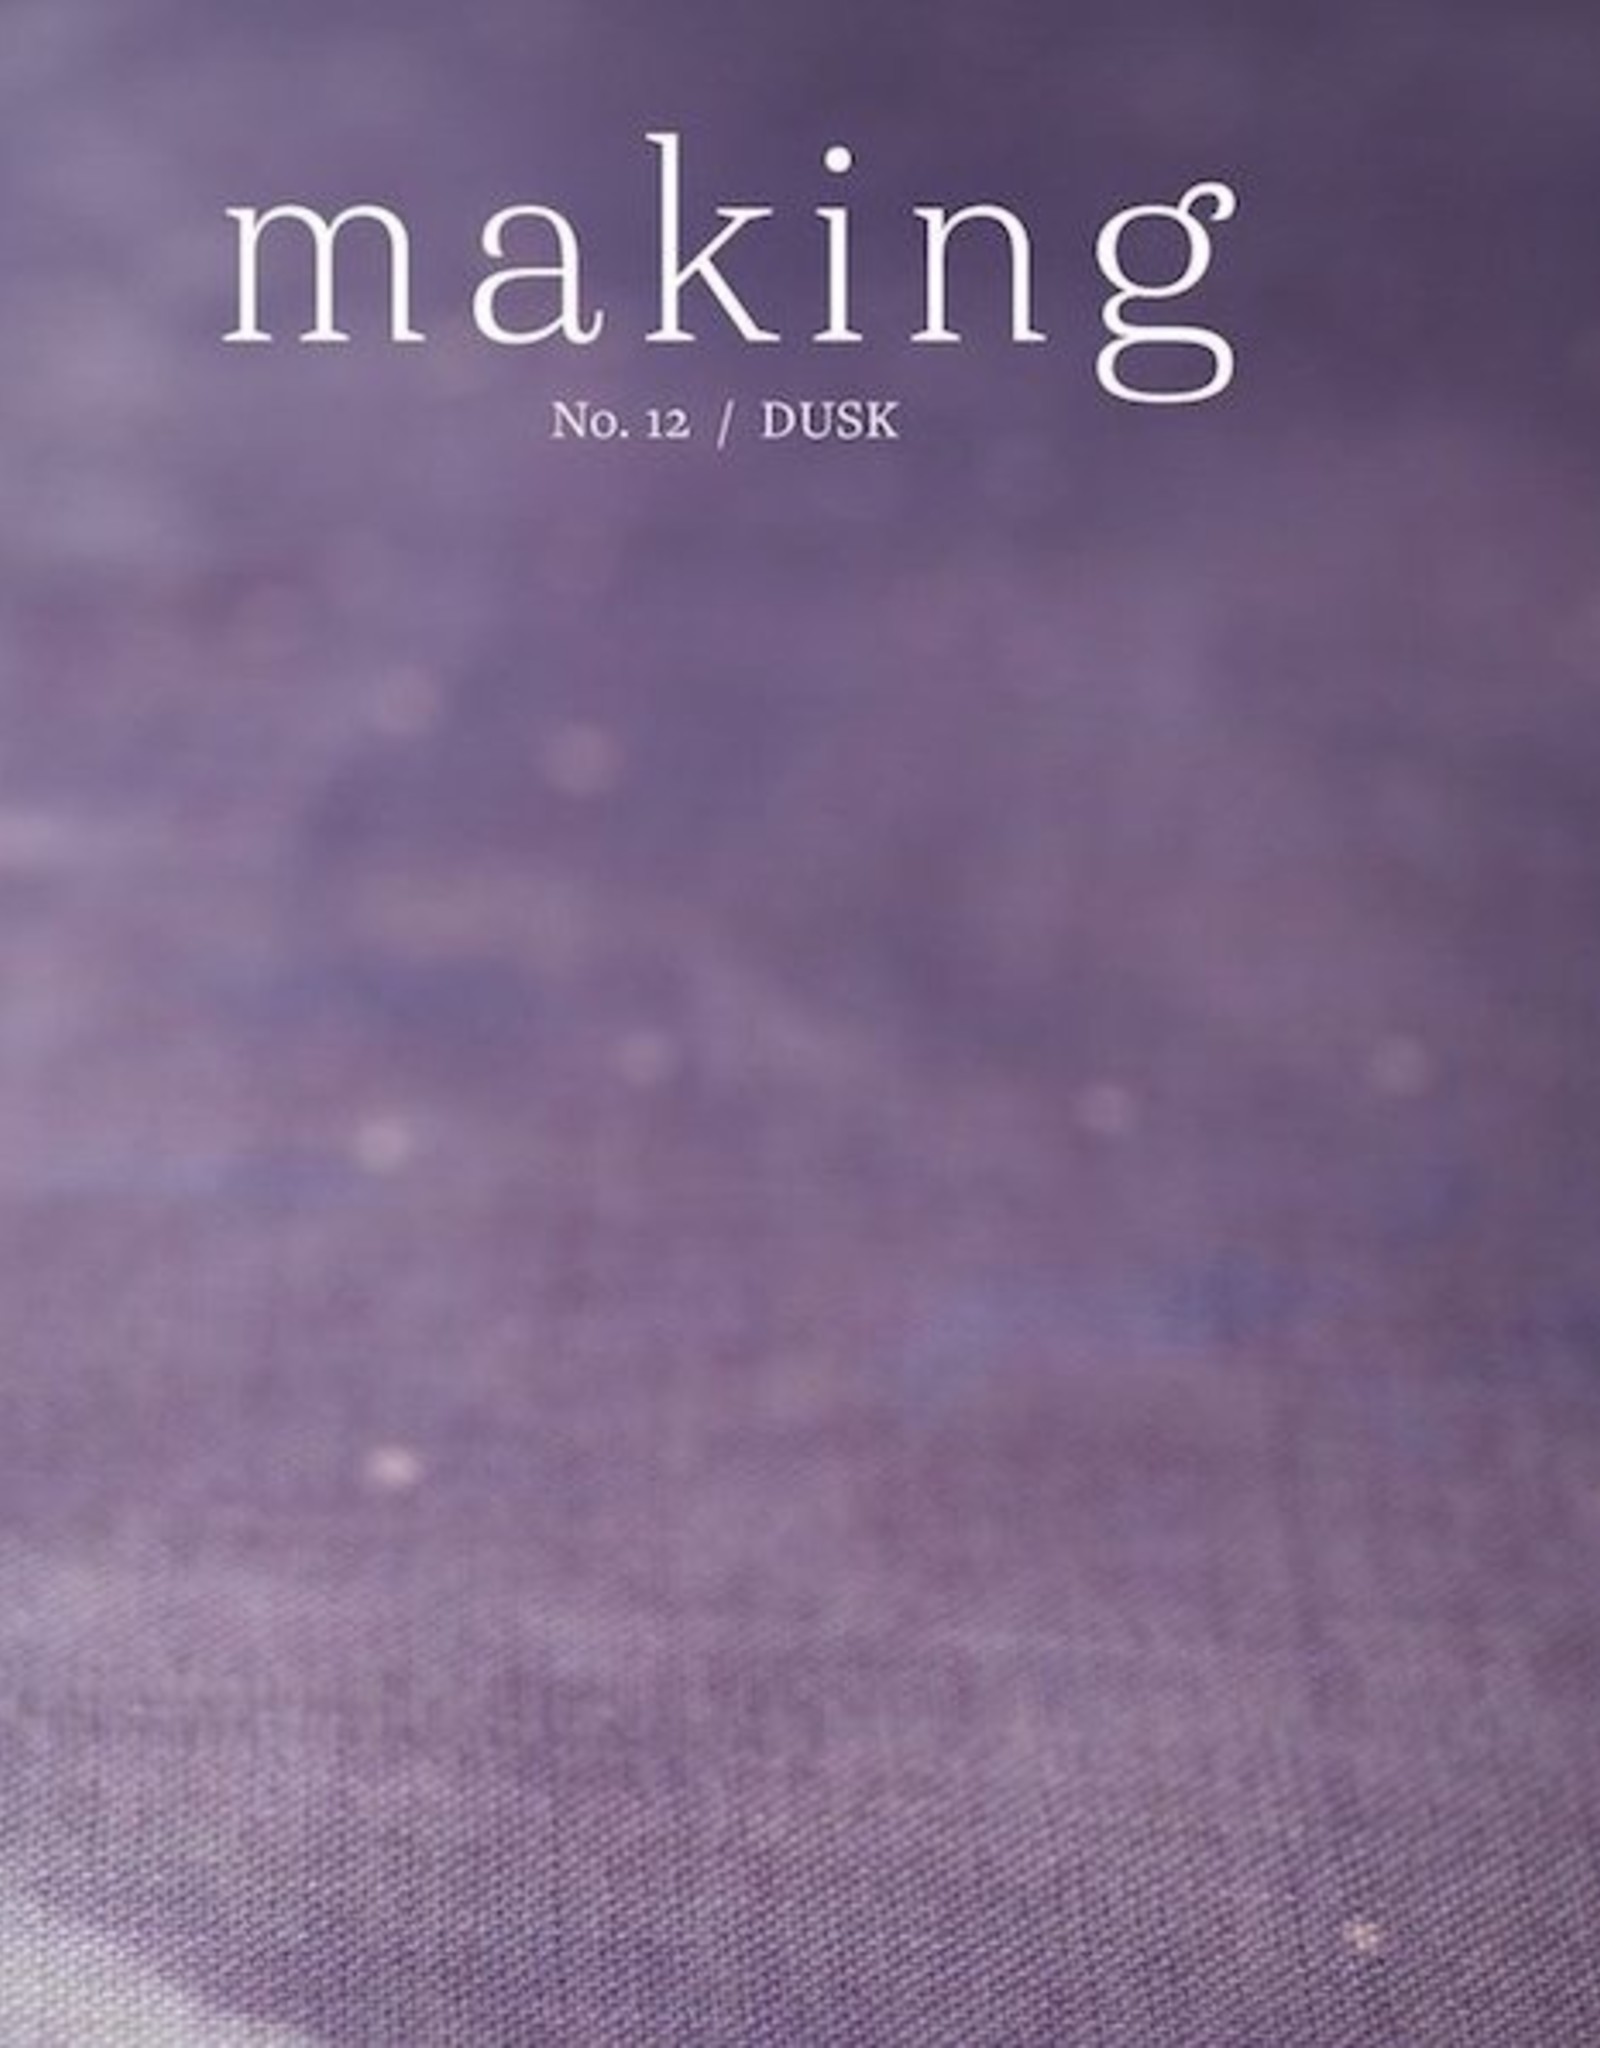 Making Making Magazine Issue No. 12 Dusk